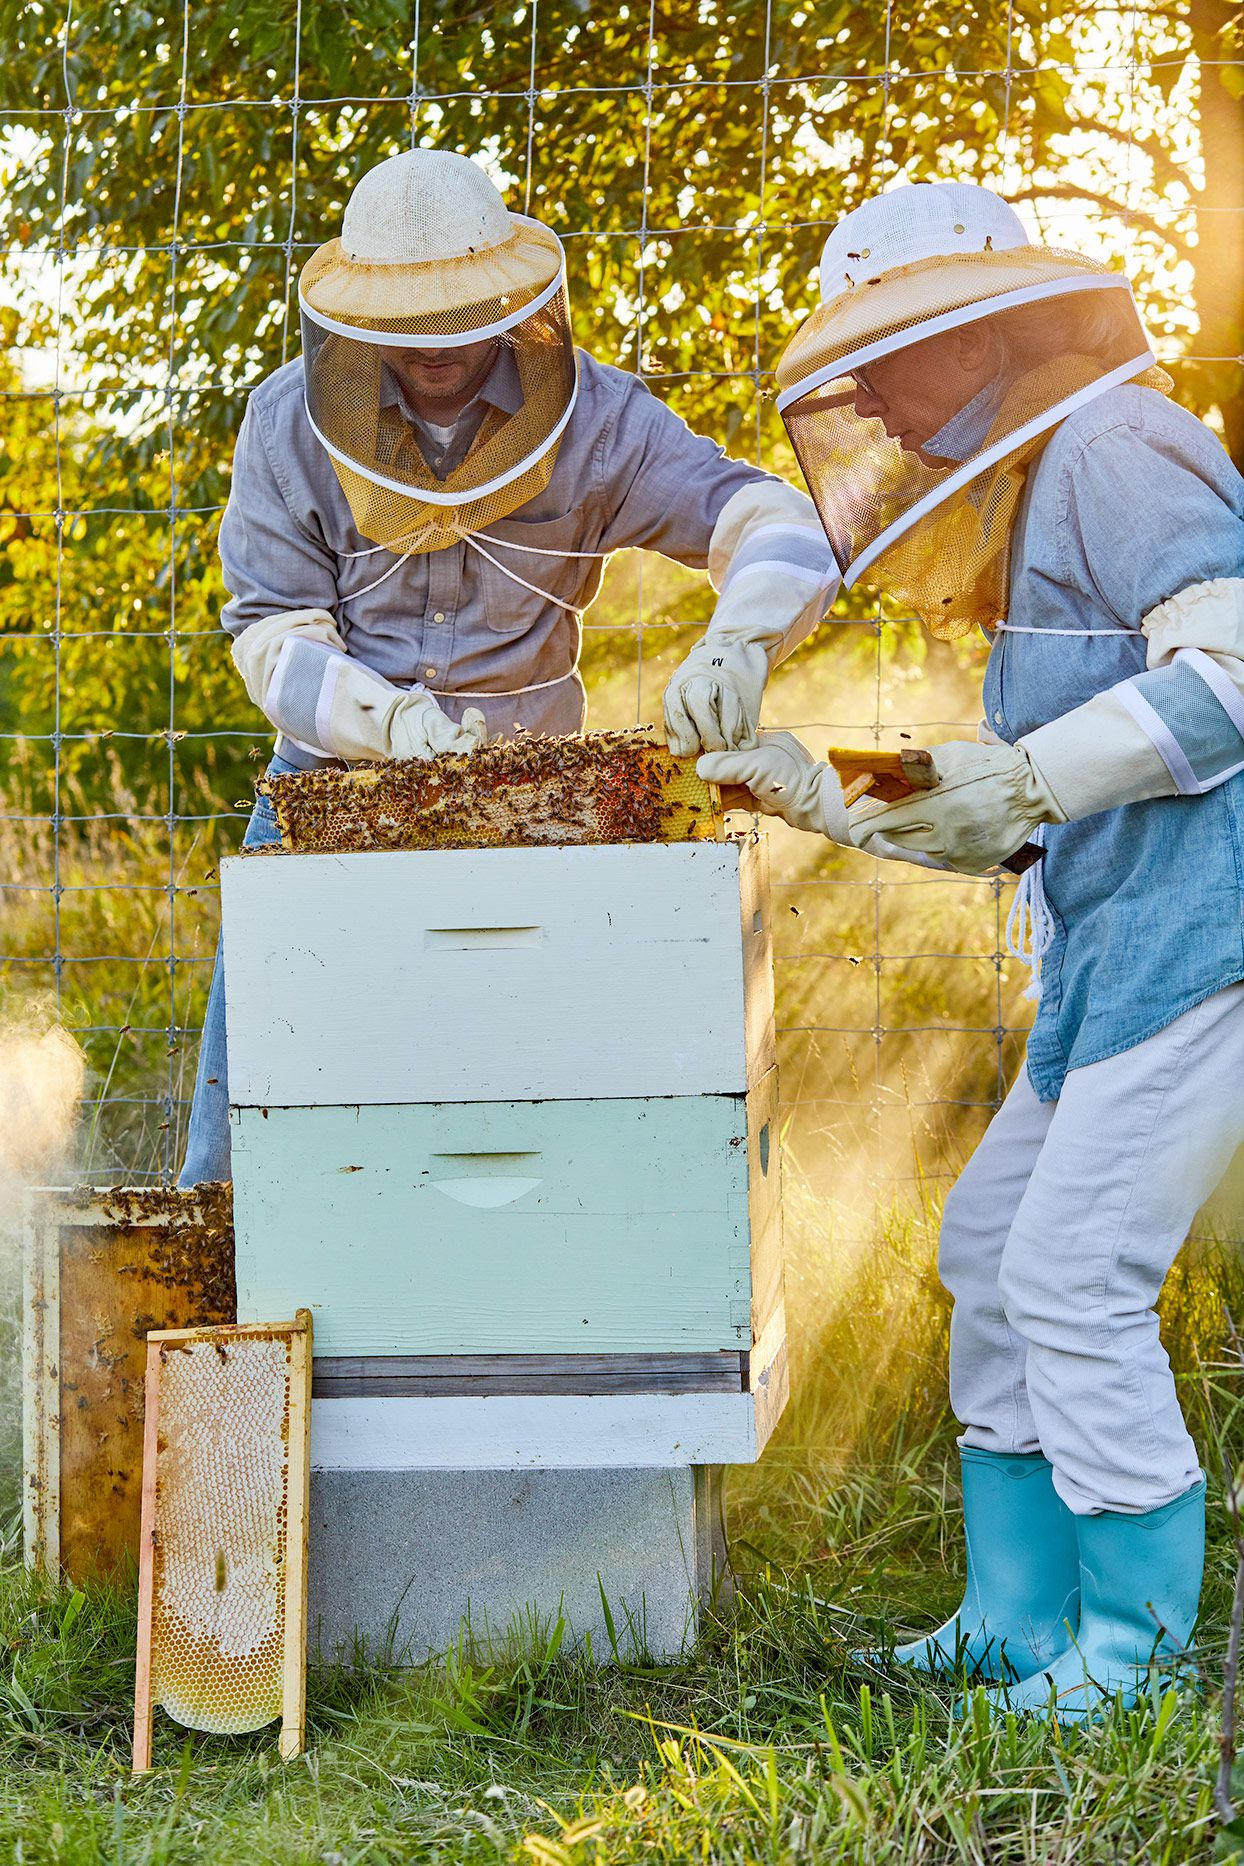 4. Beekeeping knowledge